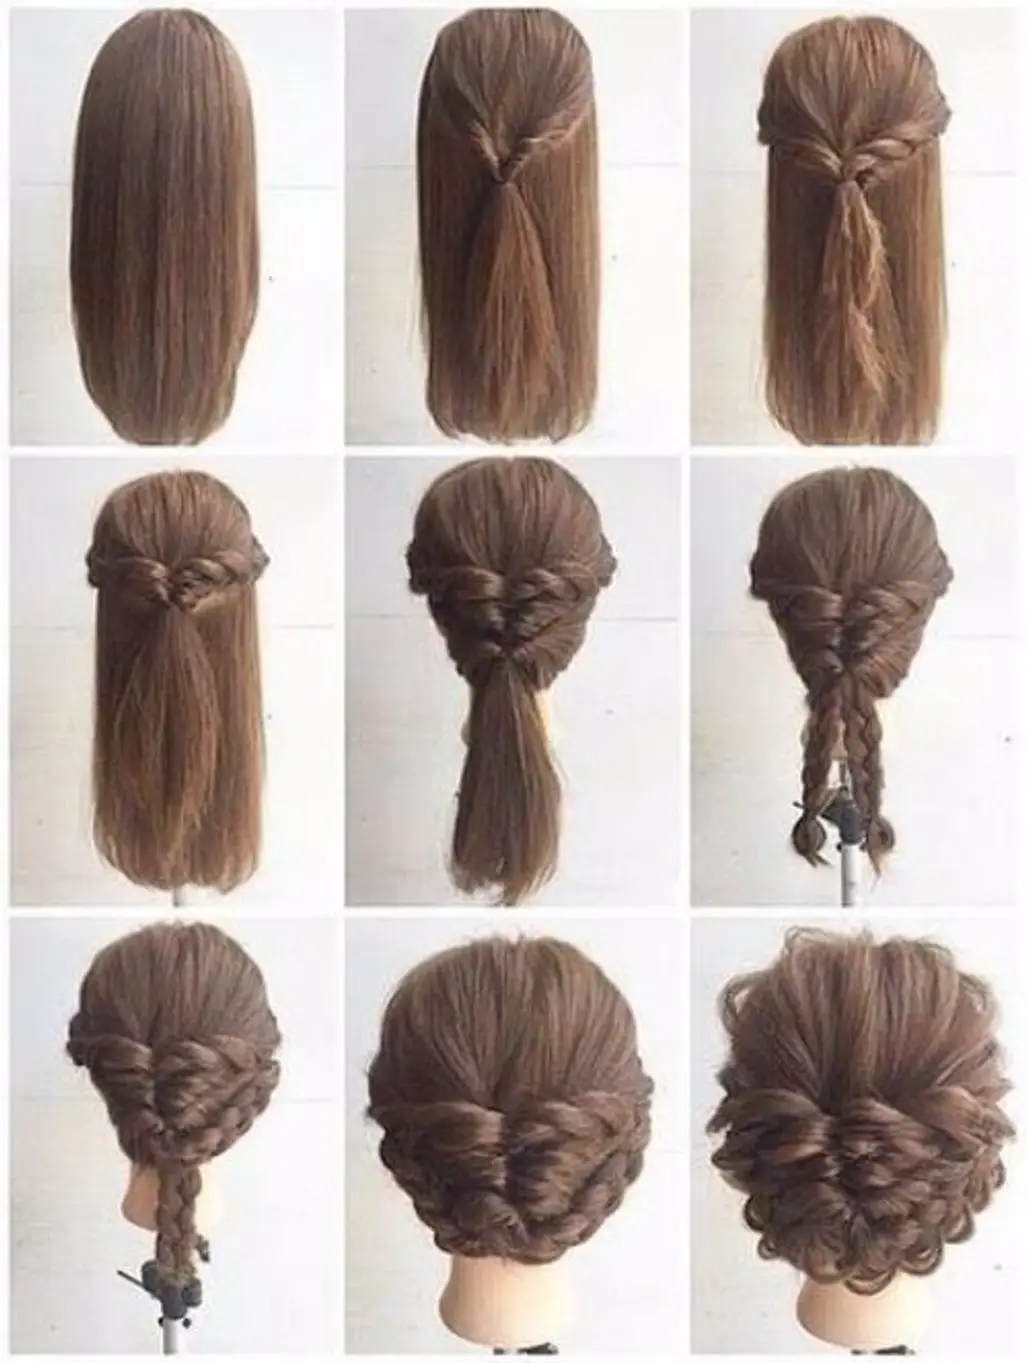 hair,brown,hairstyle,braid,french braid,